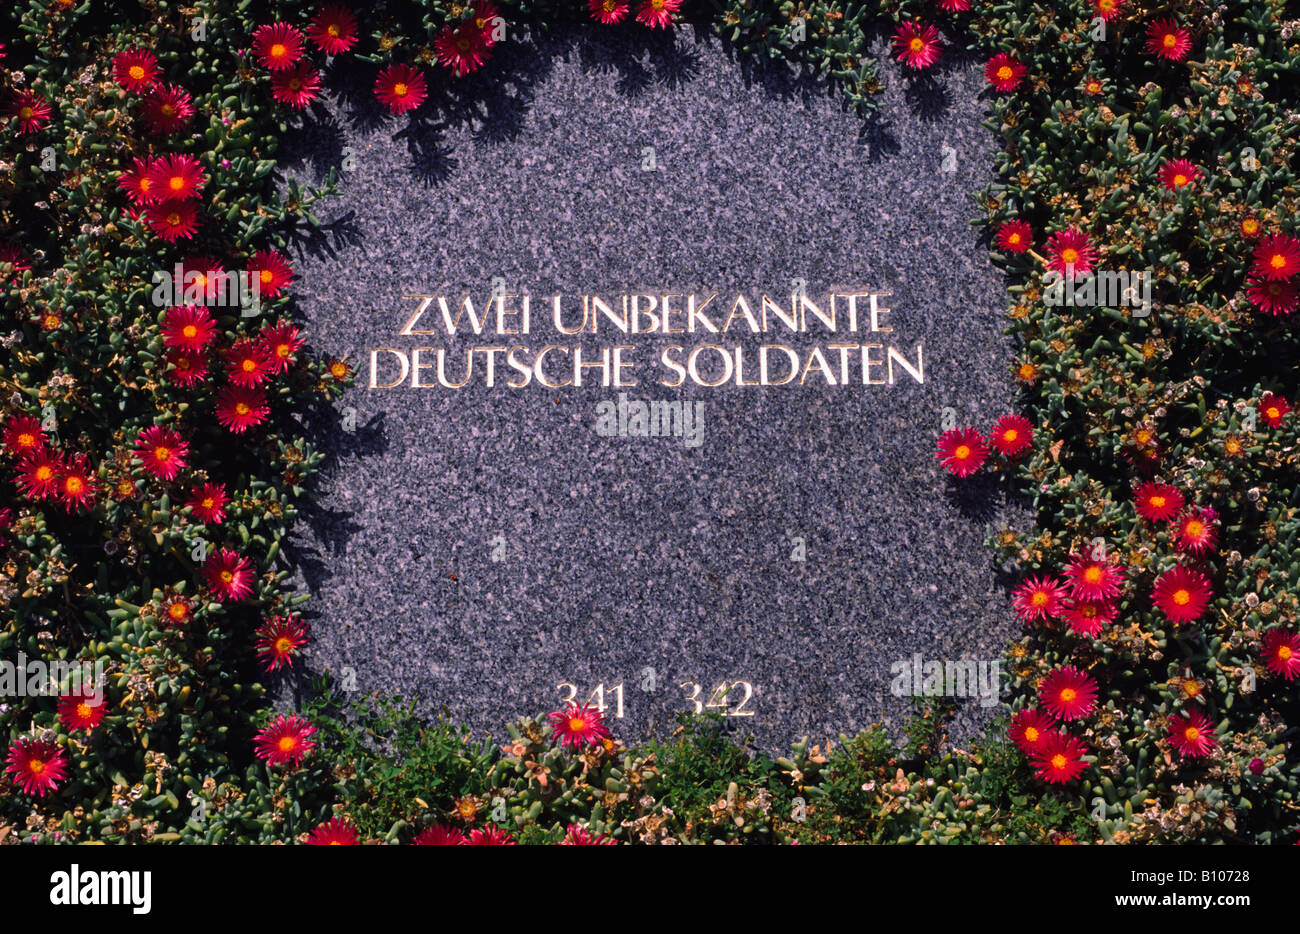 Grabstein auf dem Maleme Friedhof, wo deutsche Soldaten auf Kreta während des zweiten Weltkriegs getötet, ruht. Kreta, Griechenland. Stockfoto